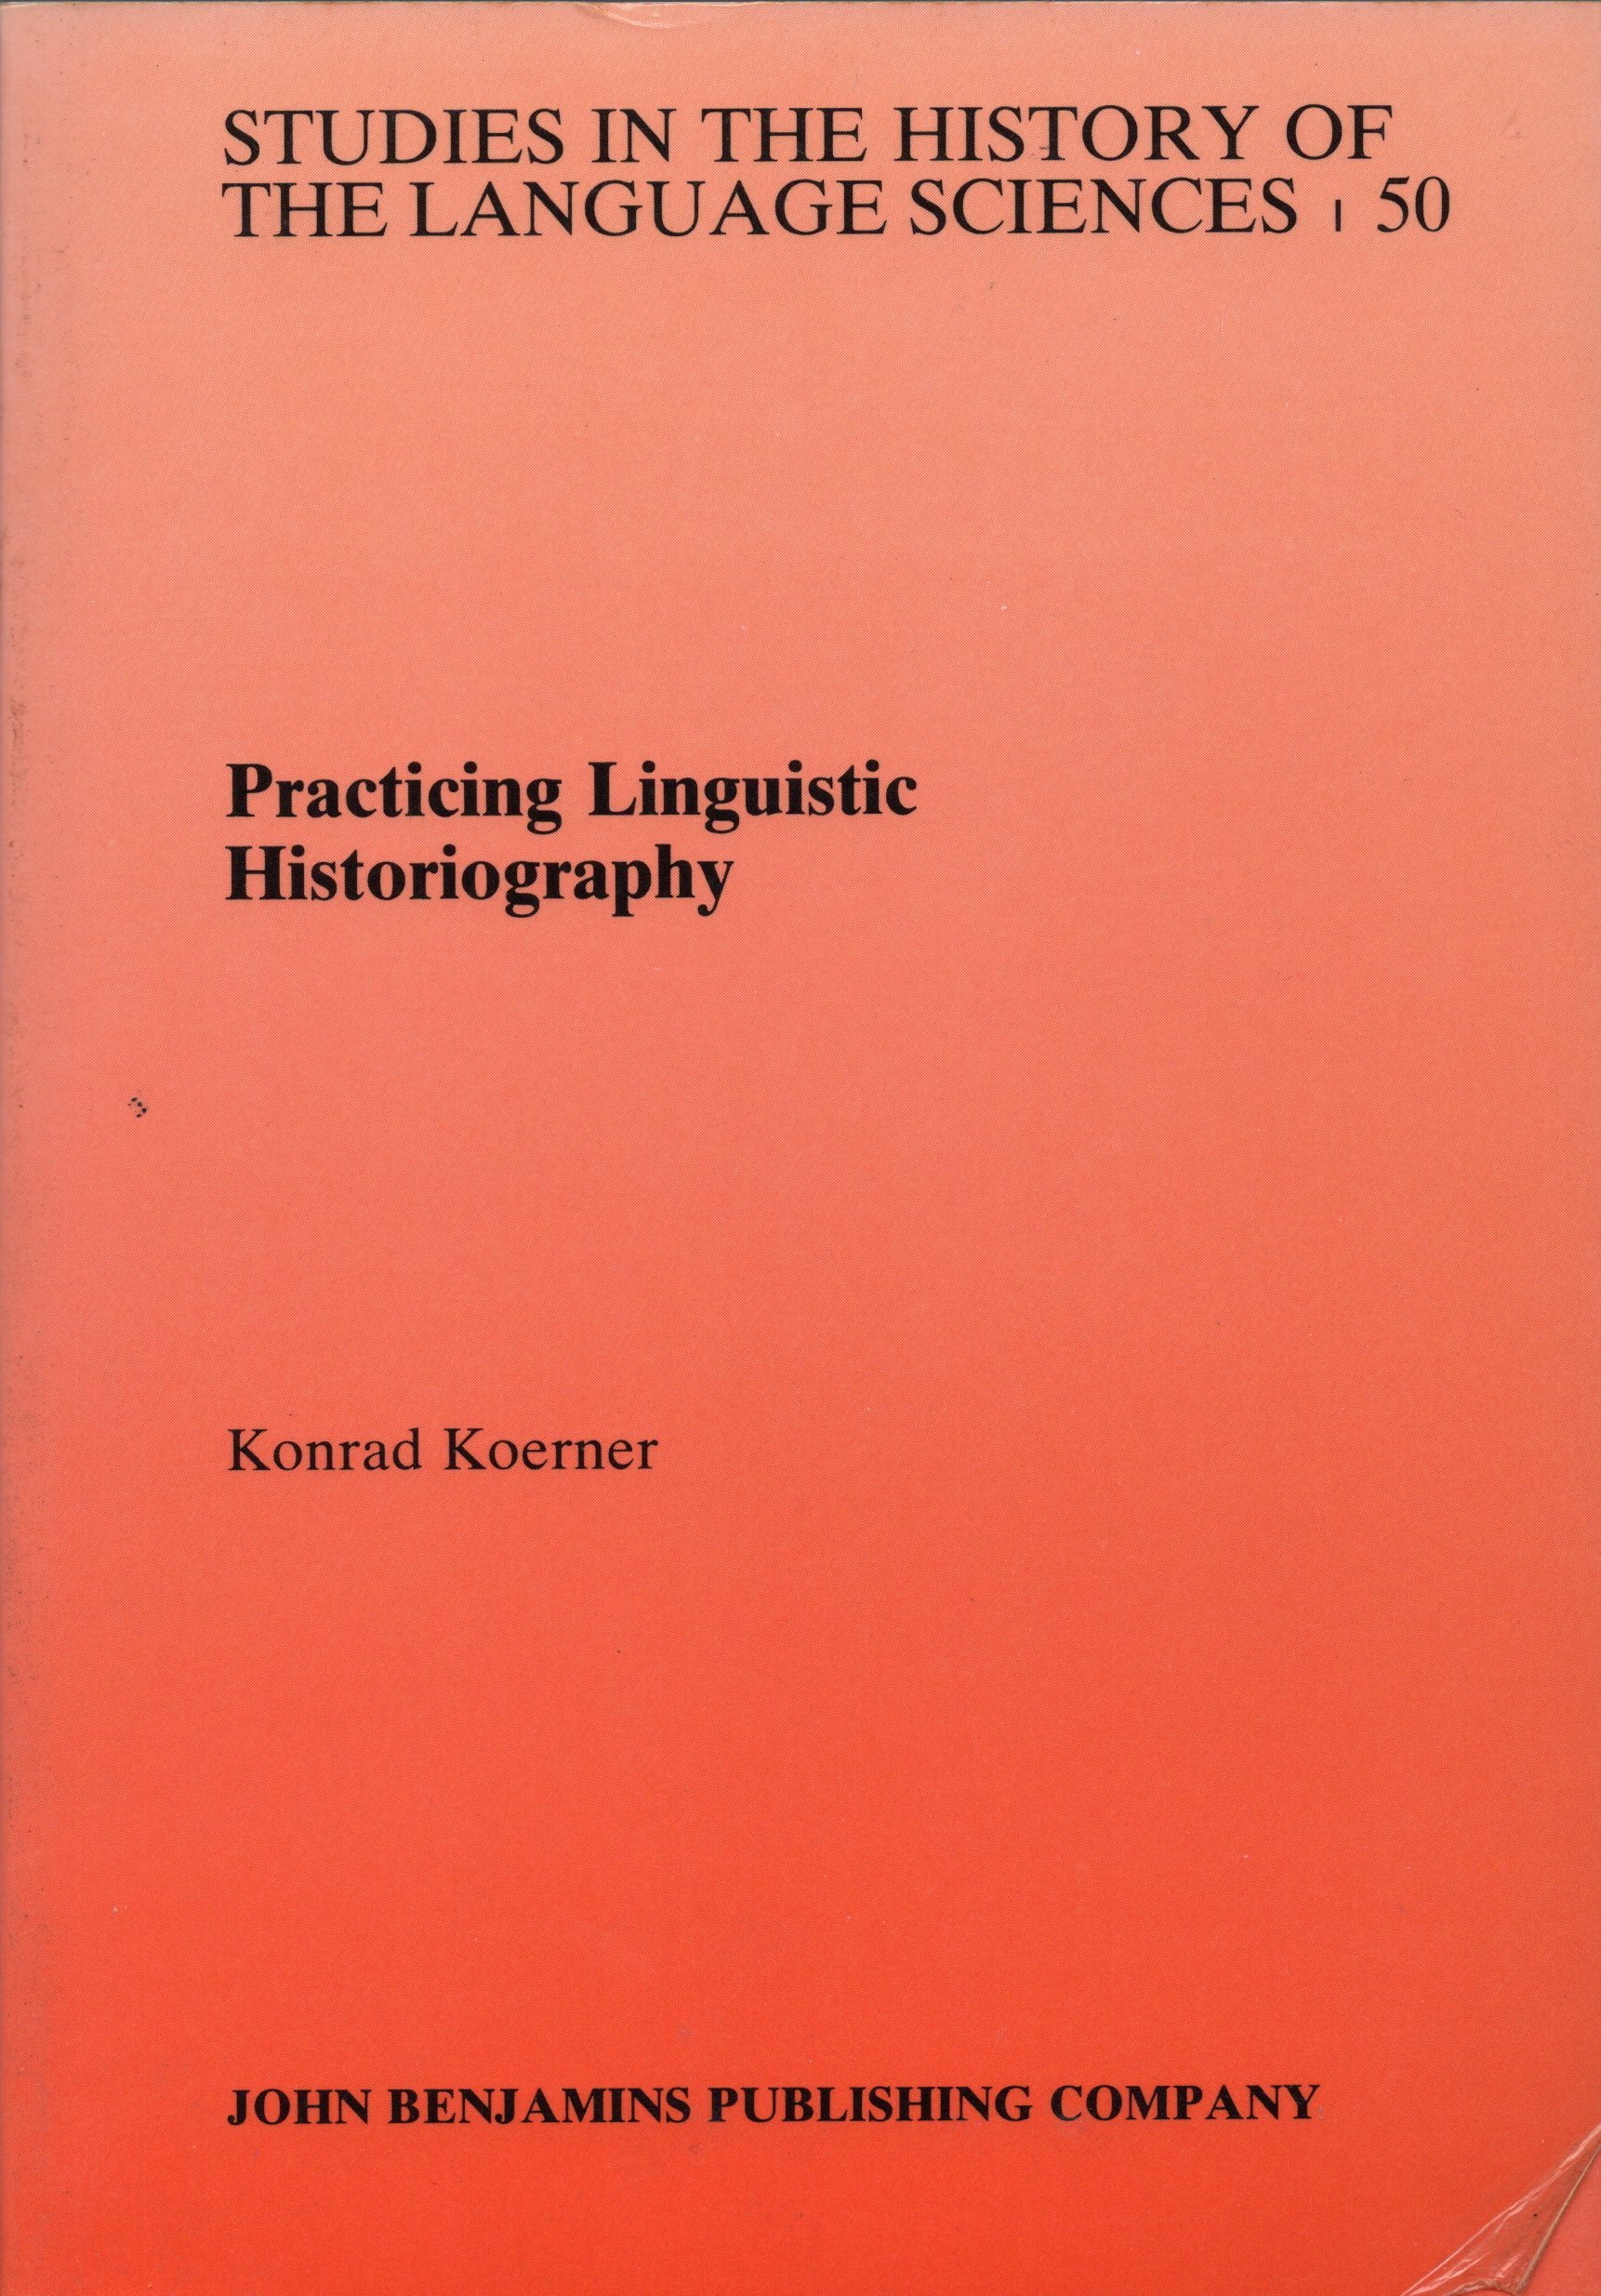 Practicing Linguistic Historiography - Koerner, E. F. K.